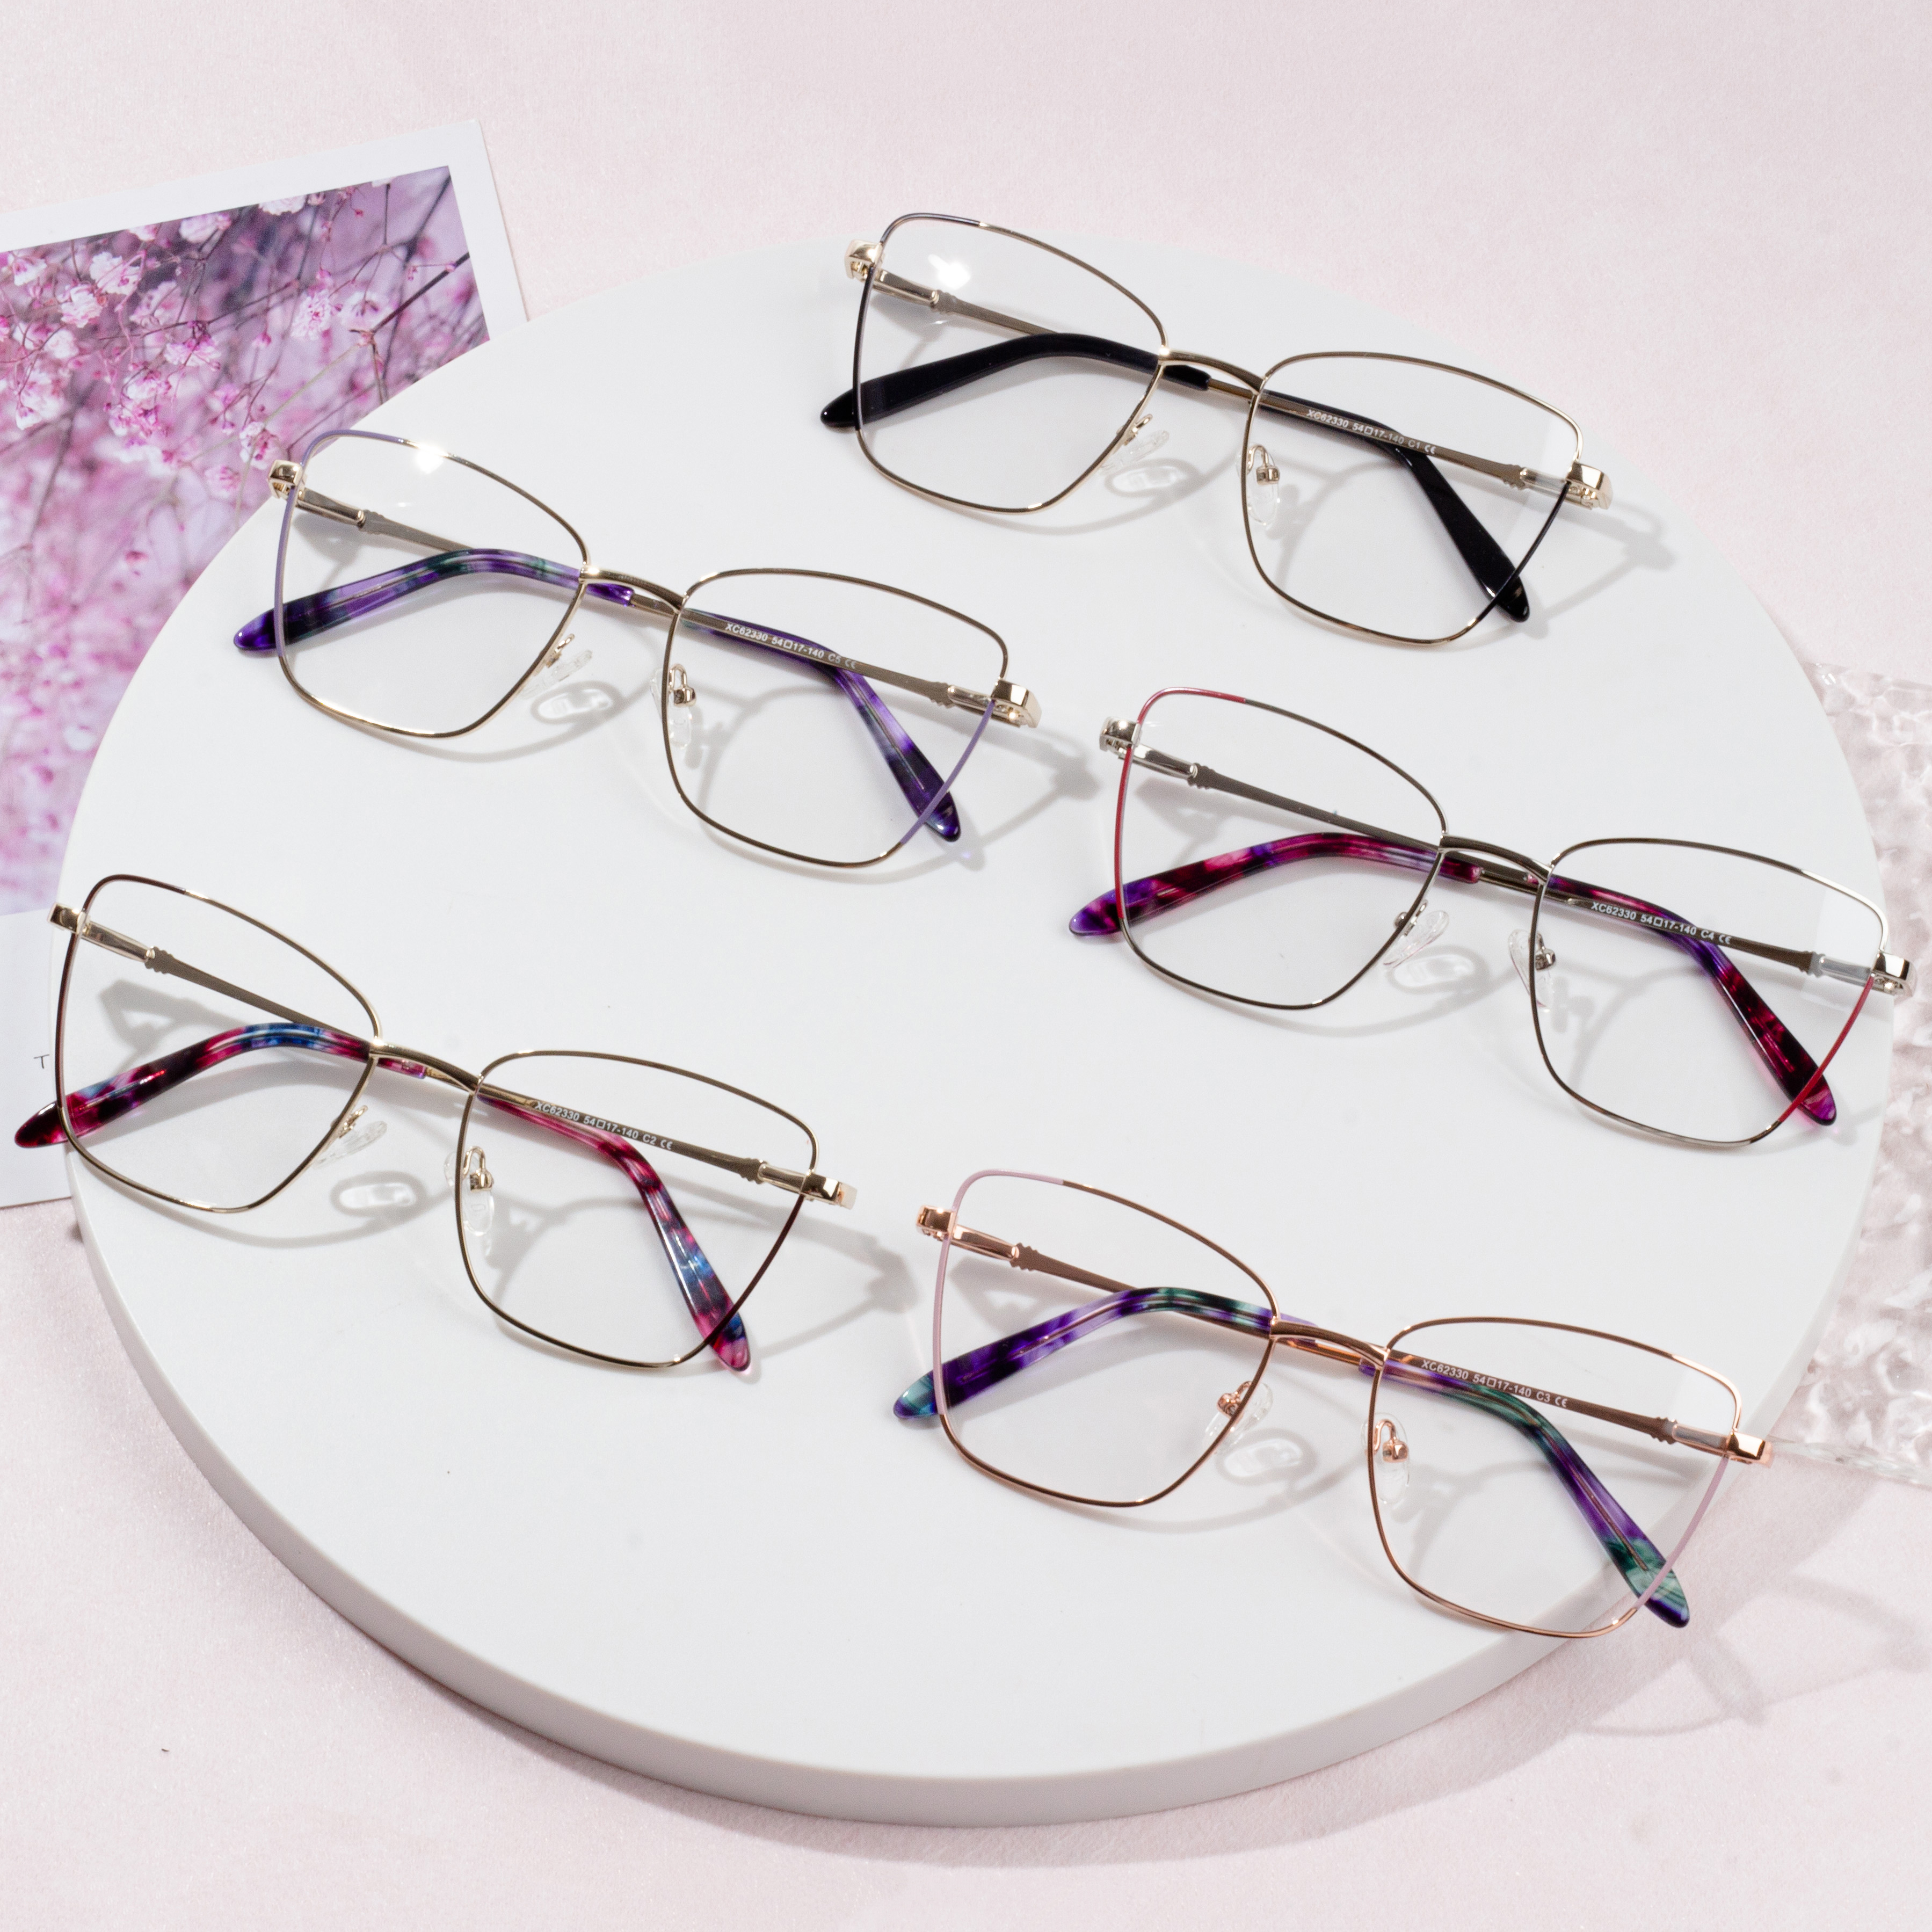 új eladó szemüvegkeretes szemüveg